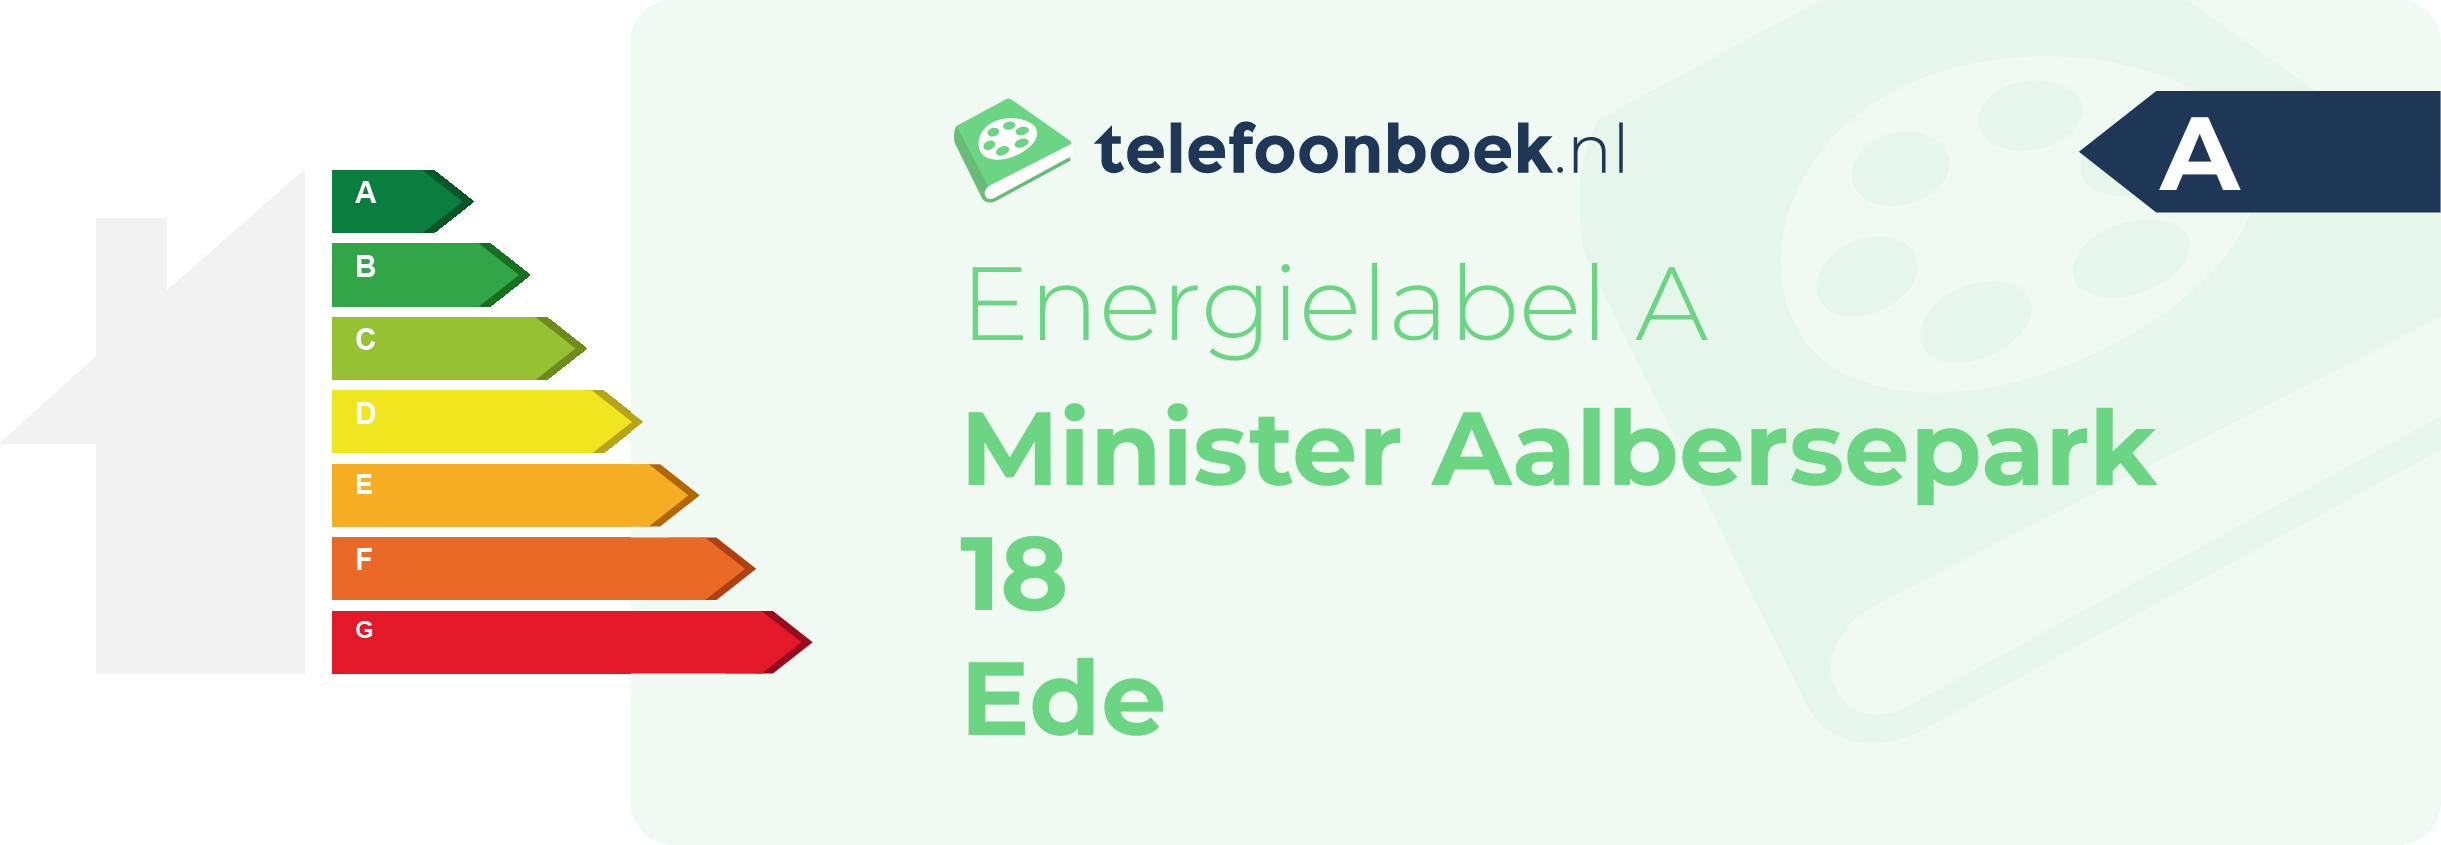 Energielabel Minister Aalbersepark 18 Ede